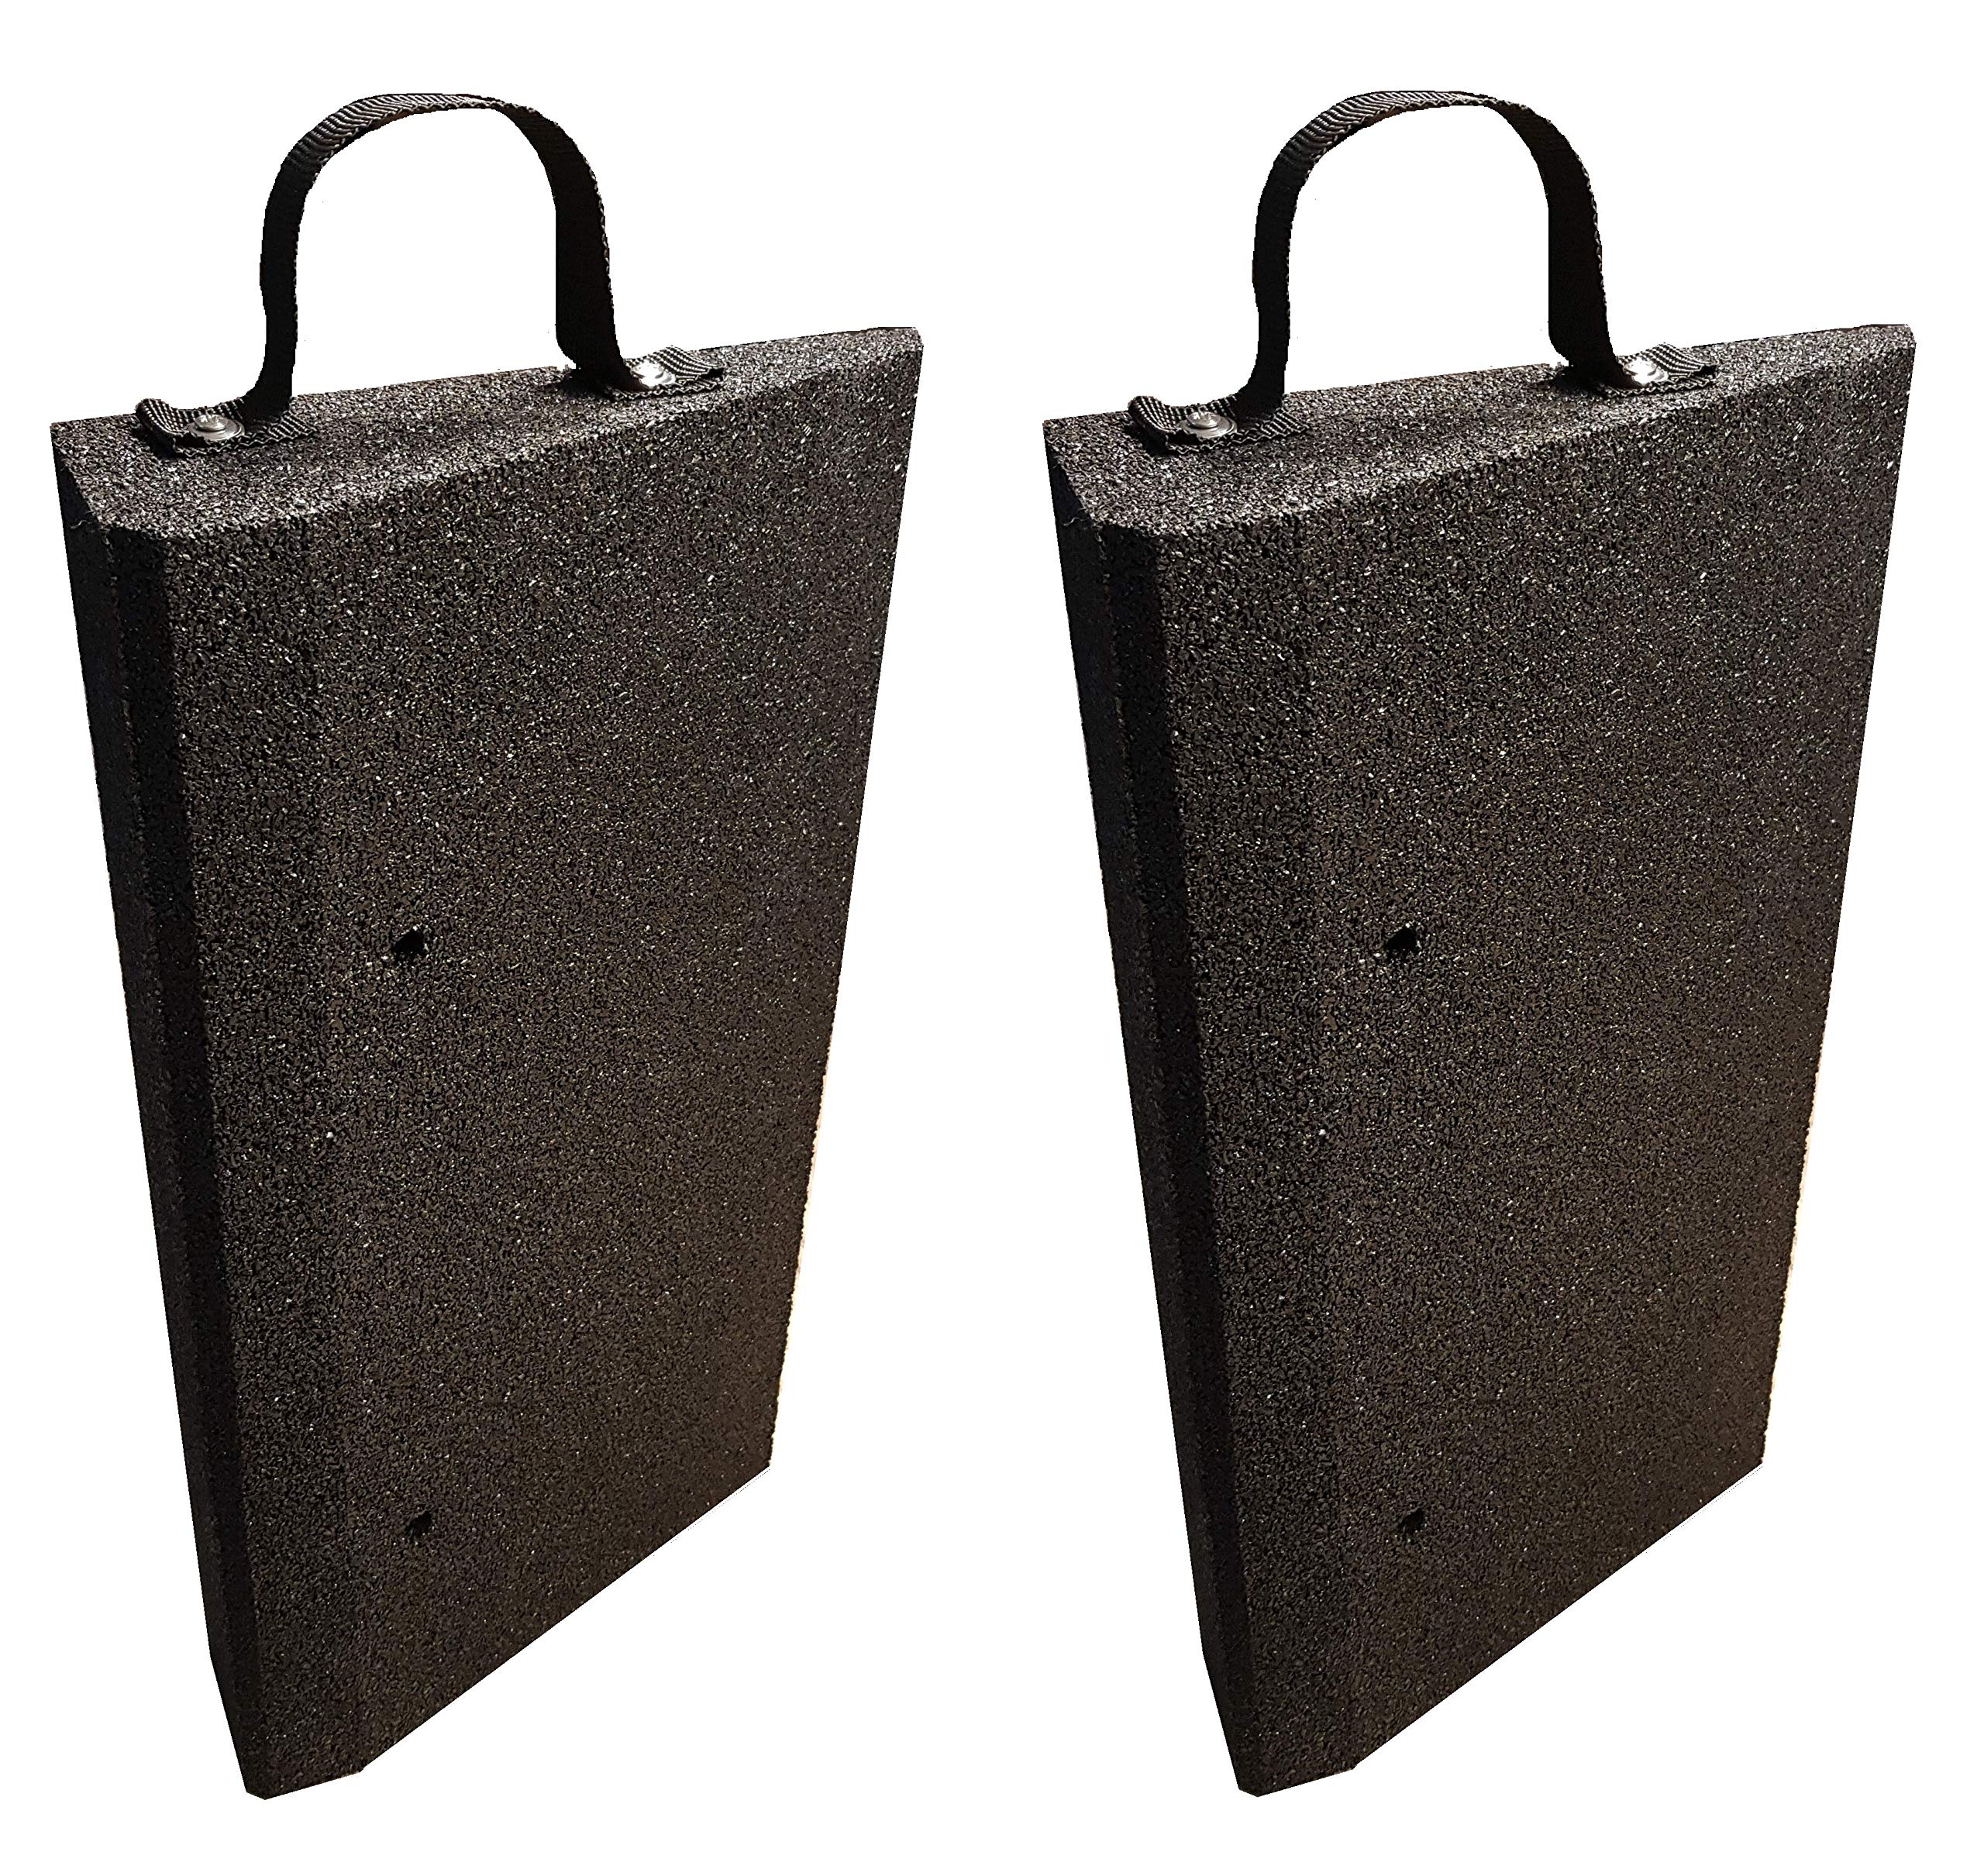 bepco Bordsteinkanten-Rampen Set (2 Stück) + Griff-Schlaufe, LxBxH: 50 x 25 x 5 cm aus Gummi (schwarz) Auffahrrampe,Türschwellenrampe, mit eingelagerten Unterlegscheiben zur Befestigung